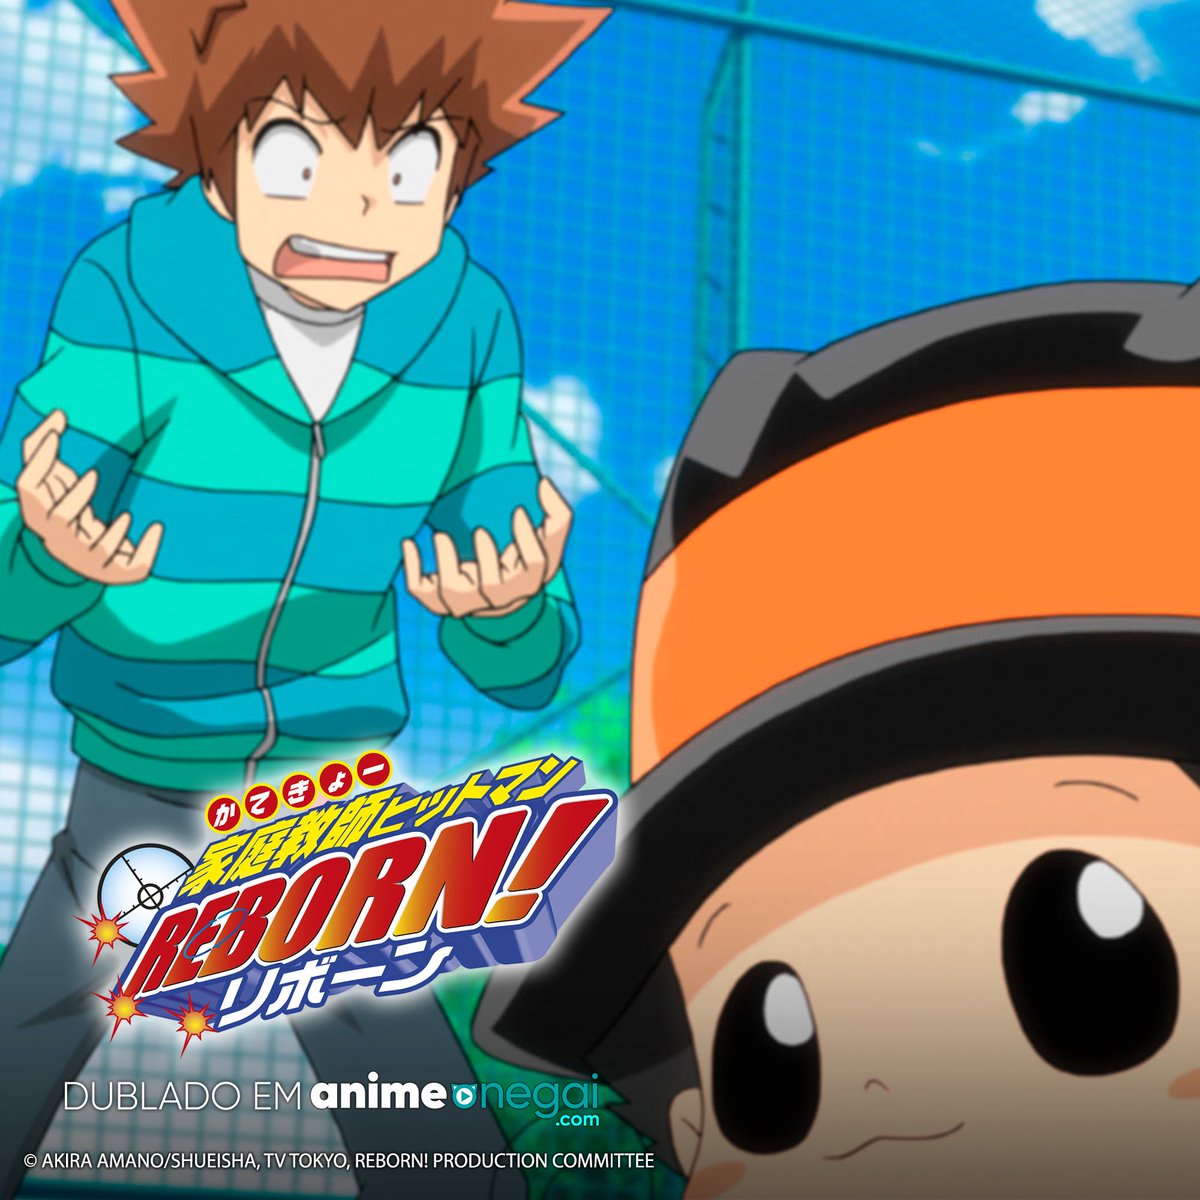 🦎Ele está entre nós! 
🔫A dublagem de Reborn estreou exclusivamente na #AnimeOnegai!
🔥Assine agora para embarcar nessa divertida aventura!
🤯Mostre a sua determinação com #RebornOnegai

#anime #animesbrasil #animedublado